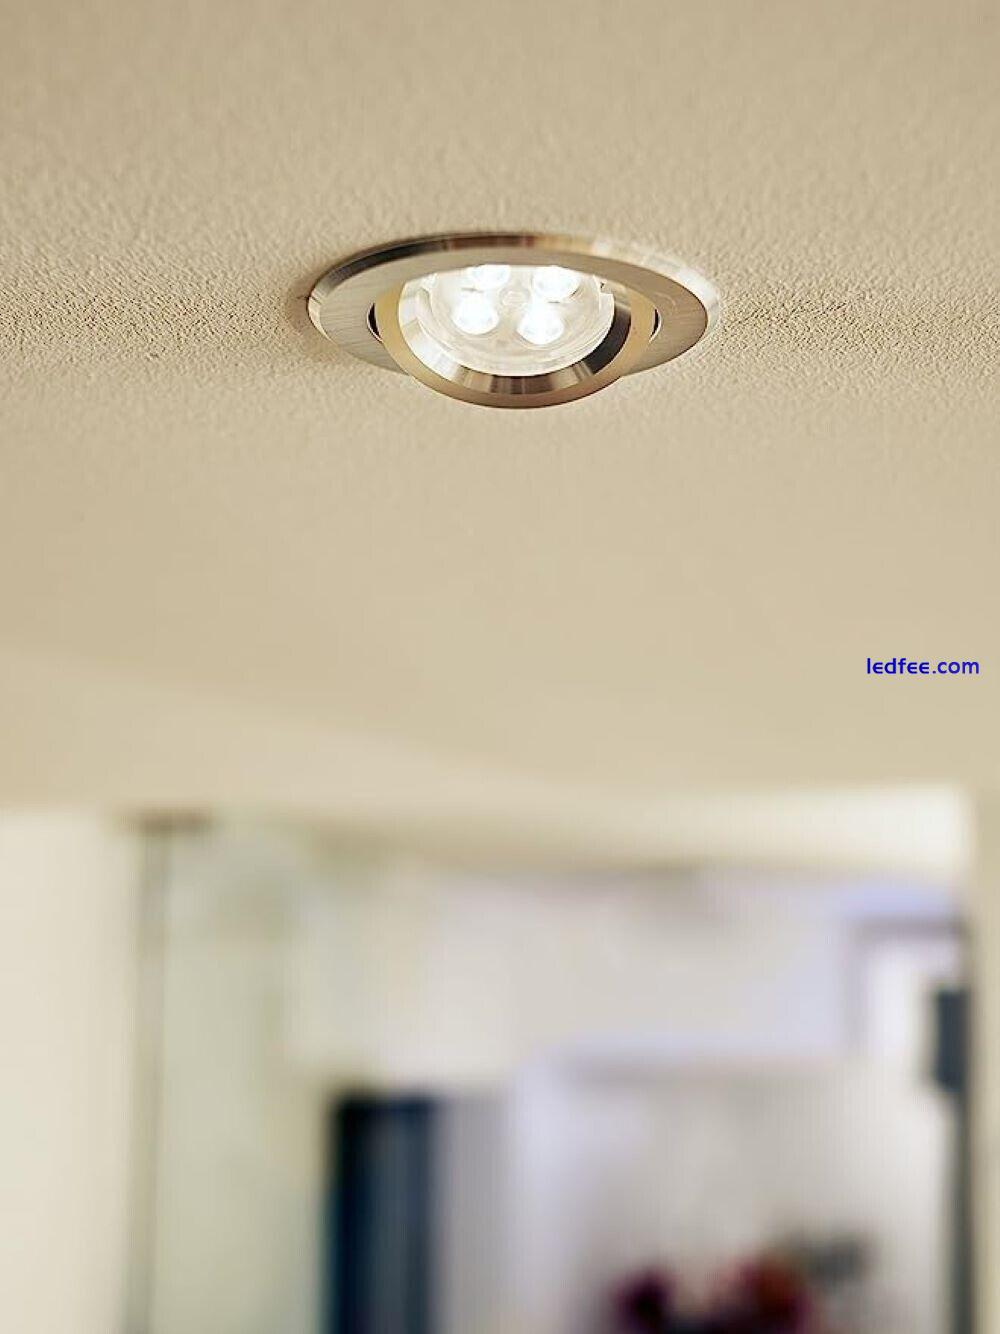 Philips 4.7W LED GU10 Spotlight Light Bulbs Non-Dim 2700K Warm White - 4pack 1 